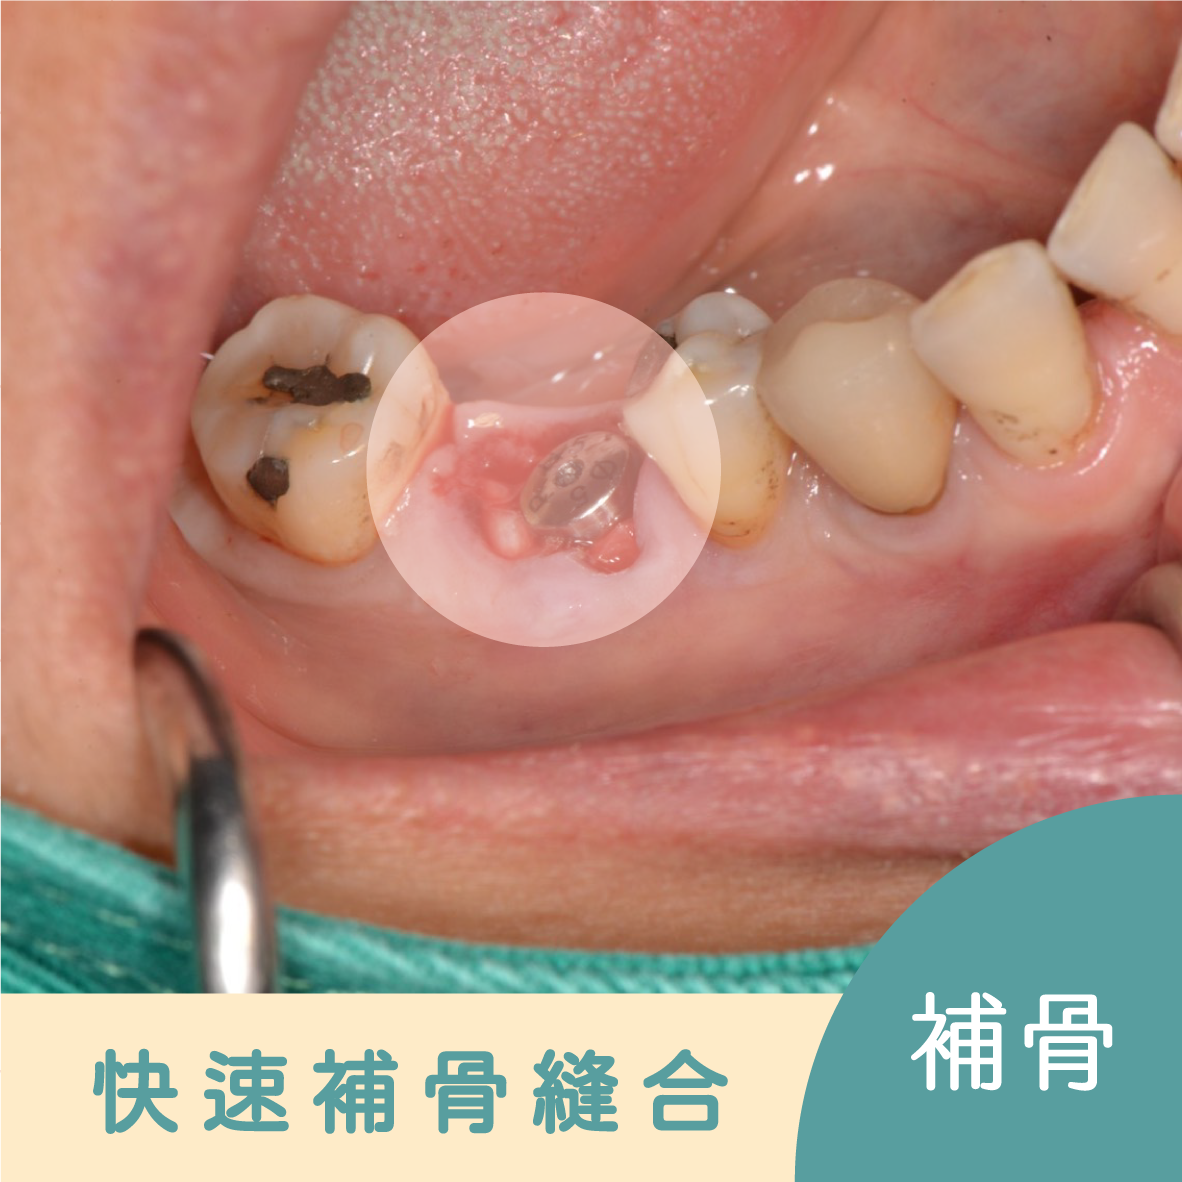 30分鐘微創導板植牙 傳統植牙 植牙補骨 安全快速 傷口不腫脹 精準規劃